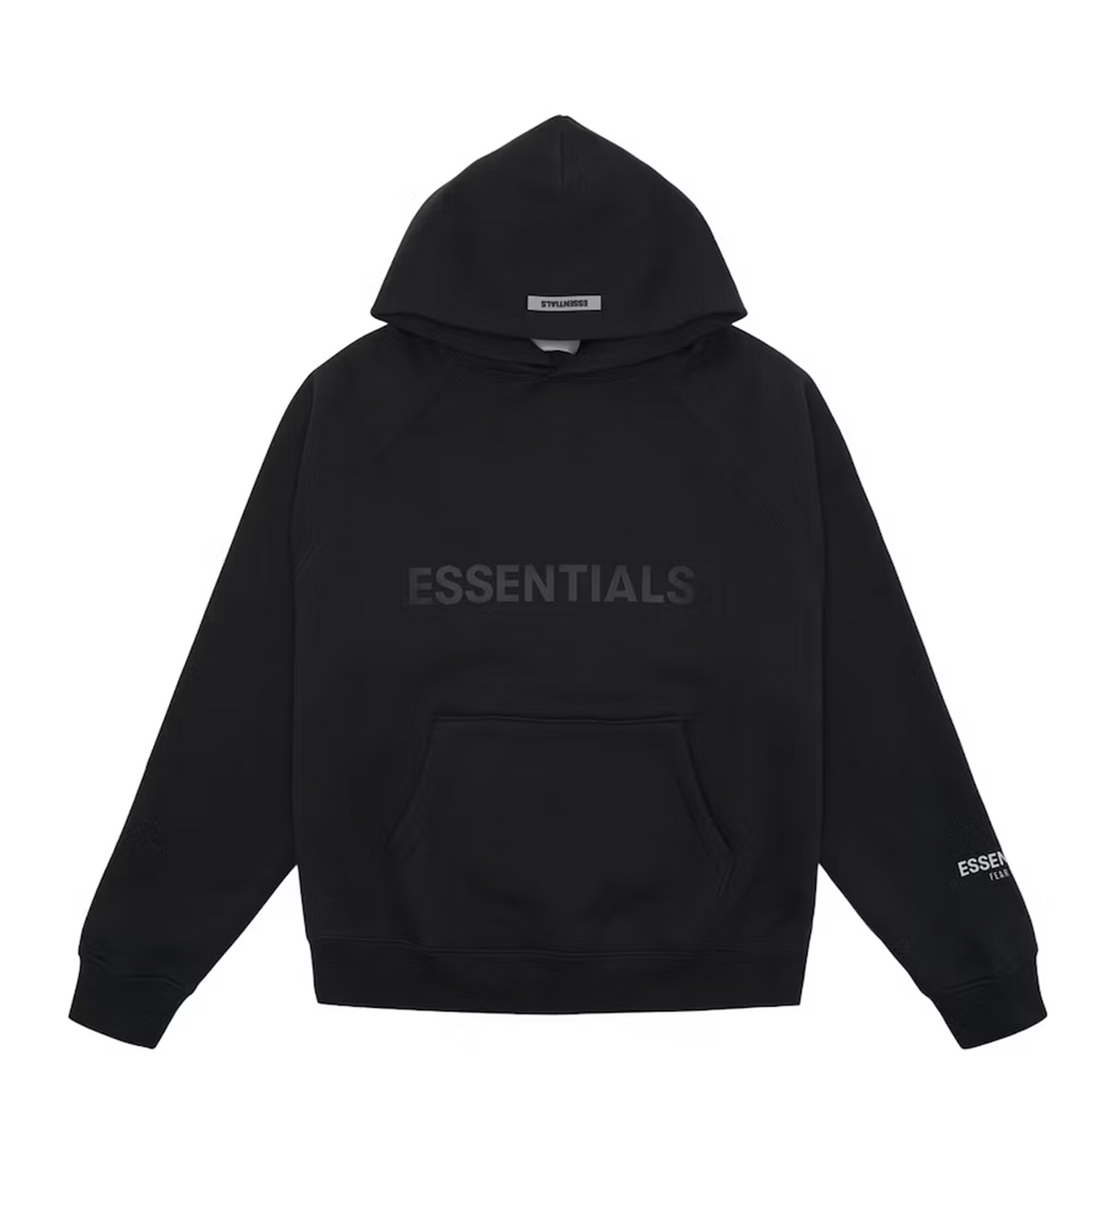 Essentials Black Hoodie Front Logo